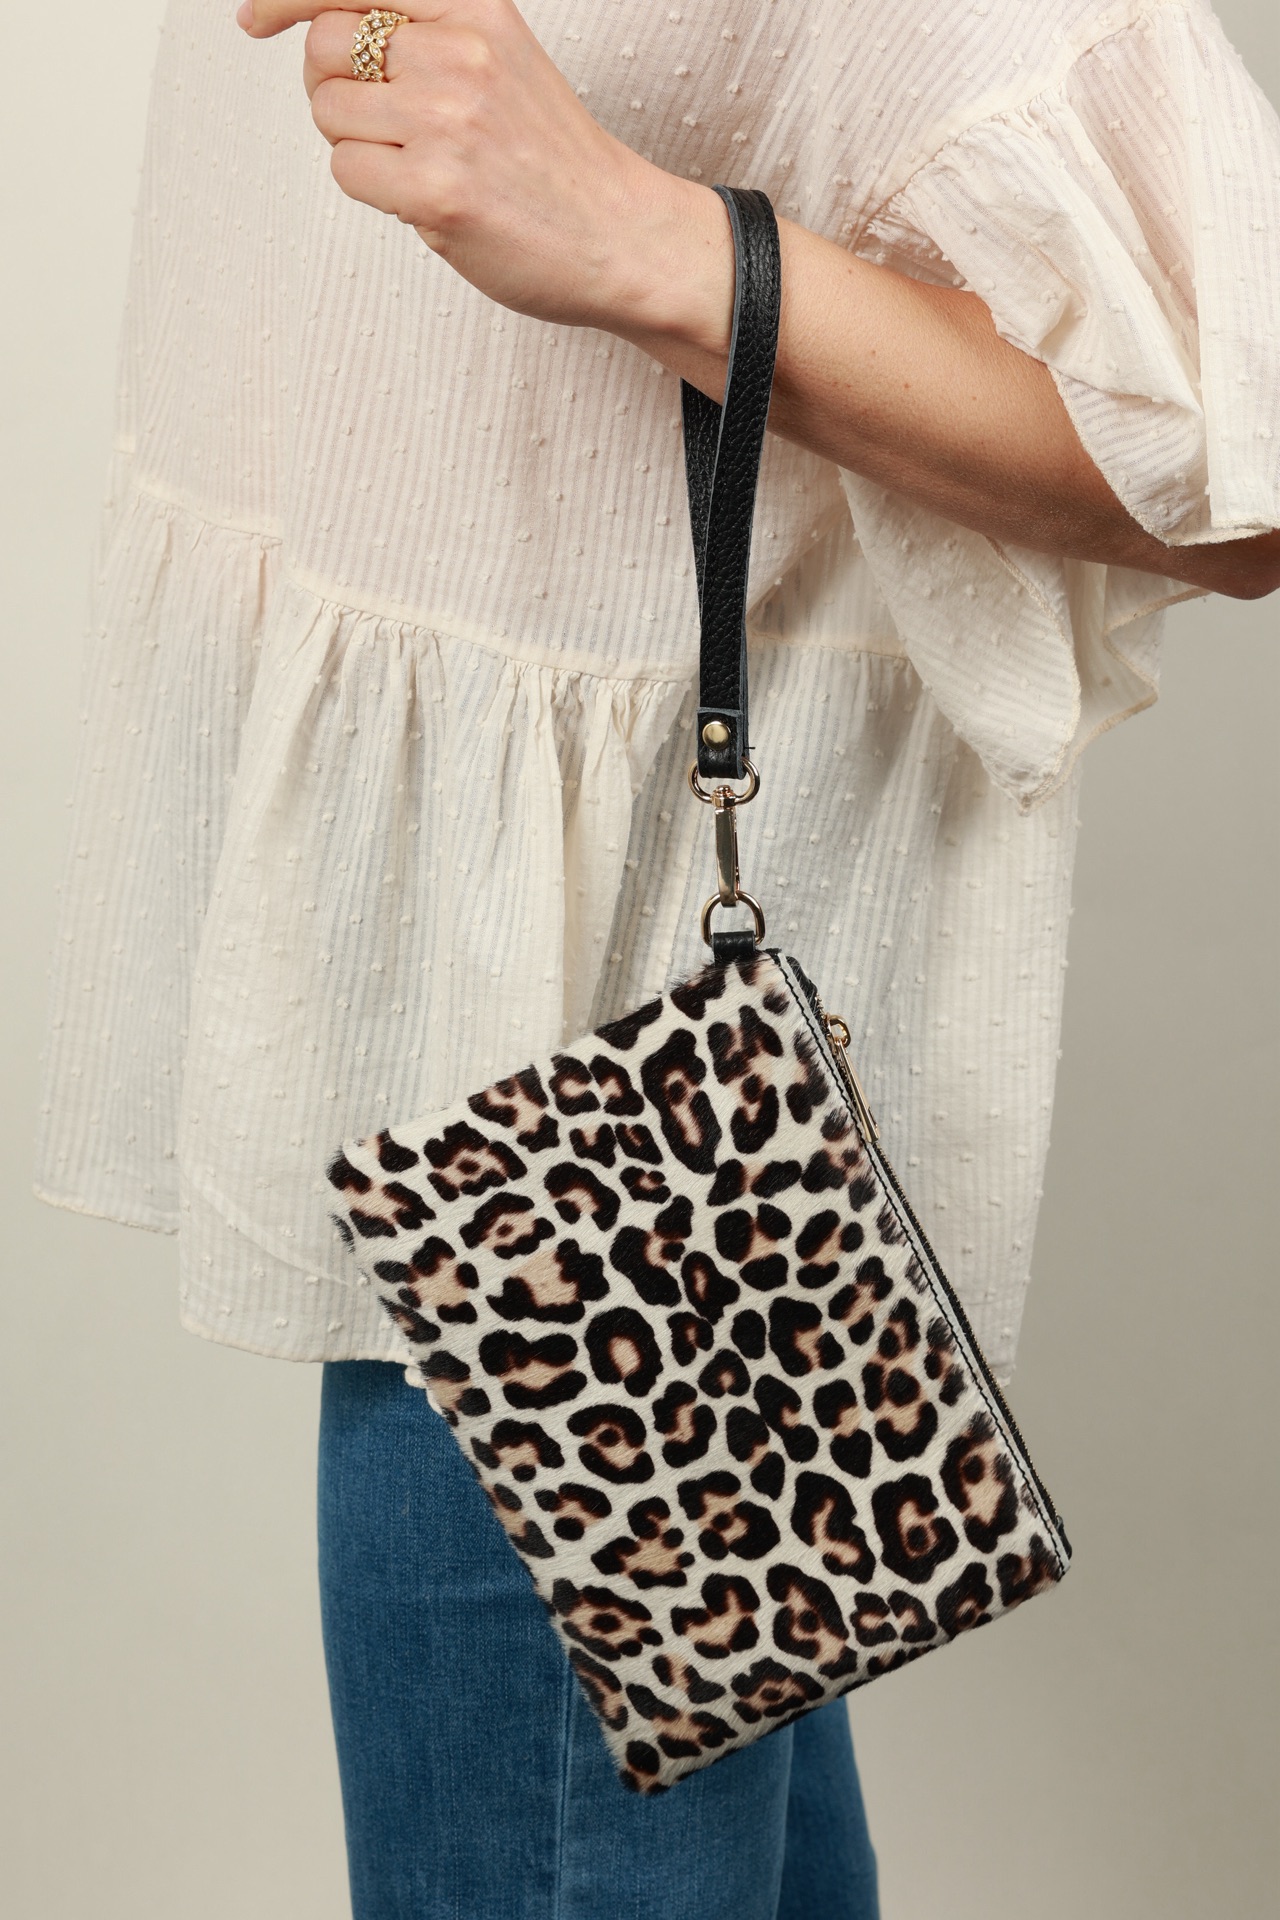 Leopard Clutch Bag